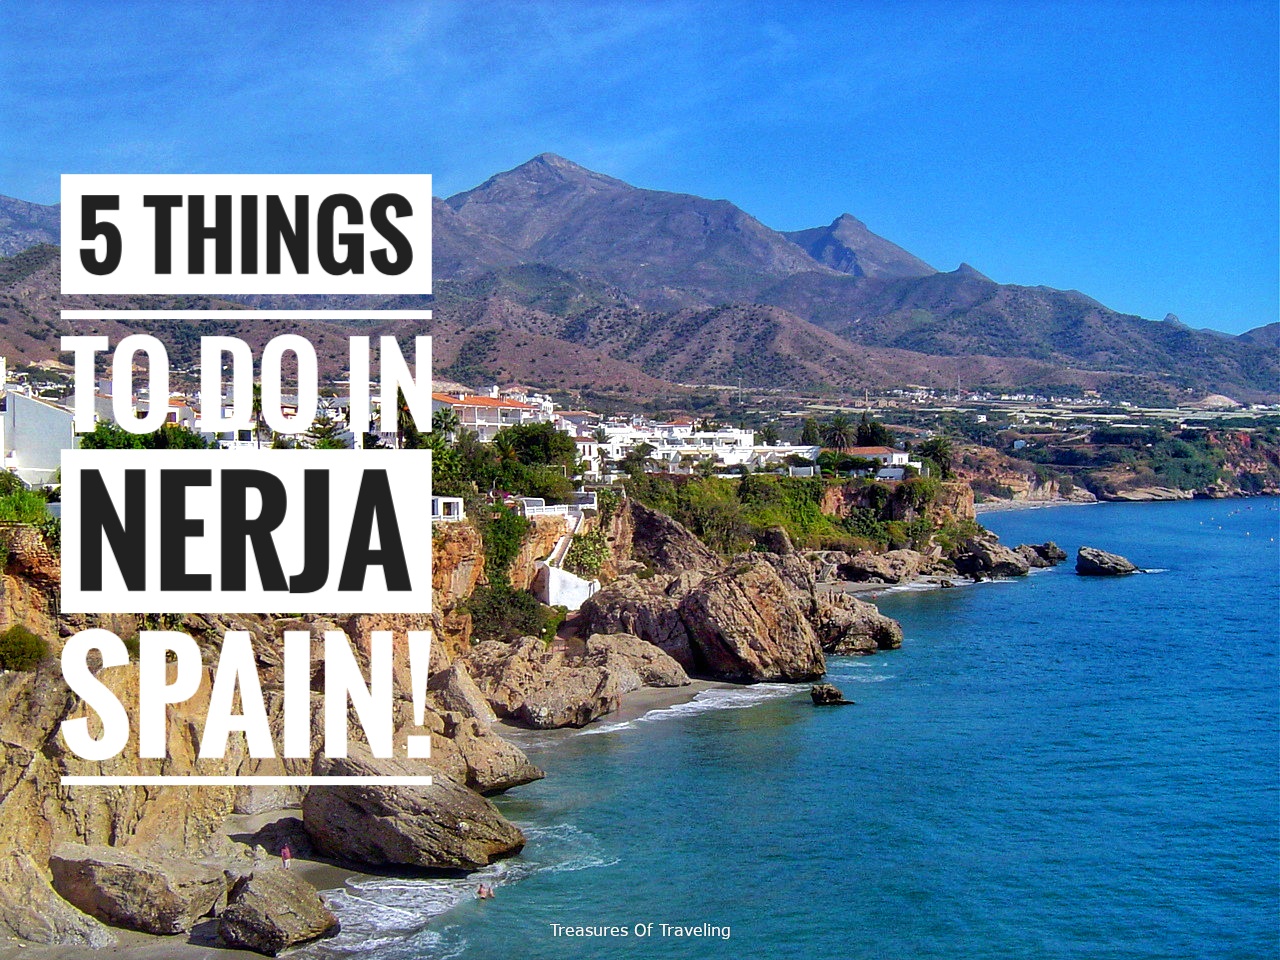 5 Things to do in Nerja Spain!